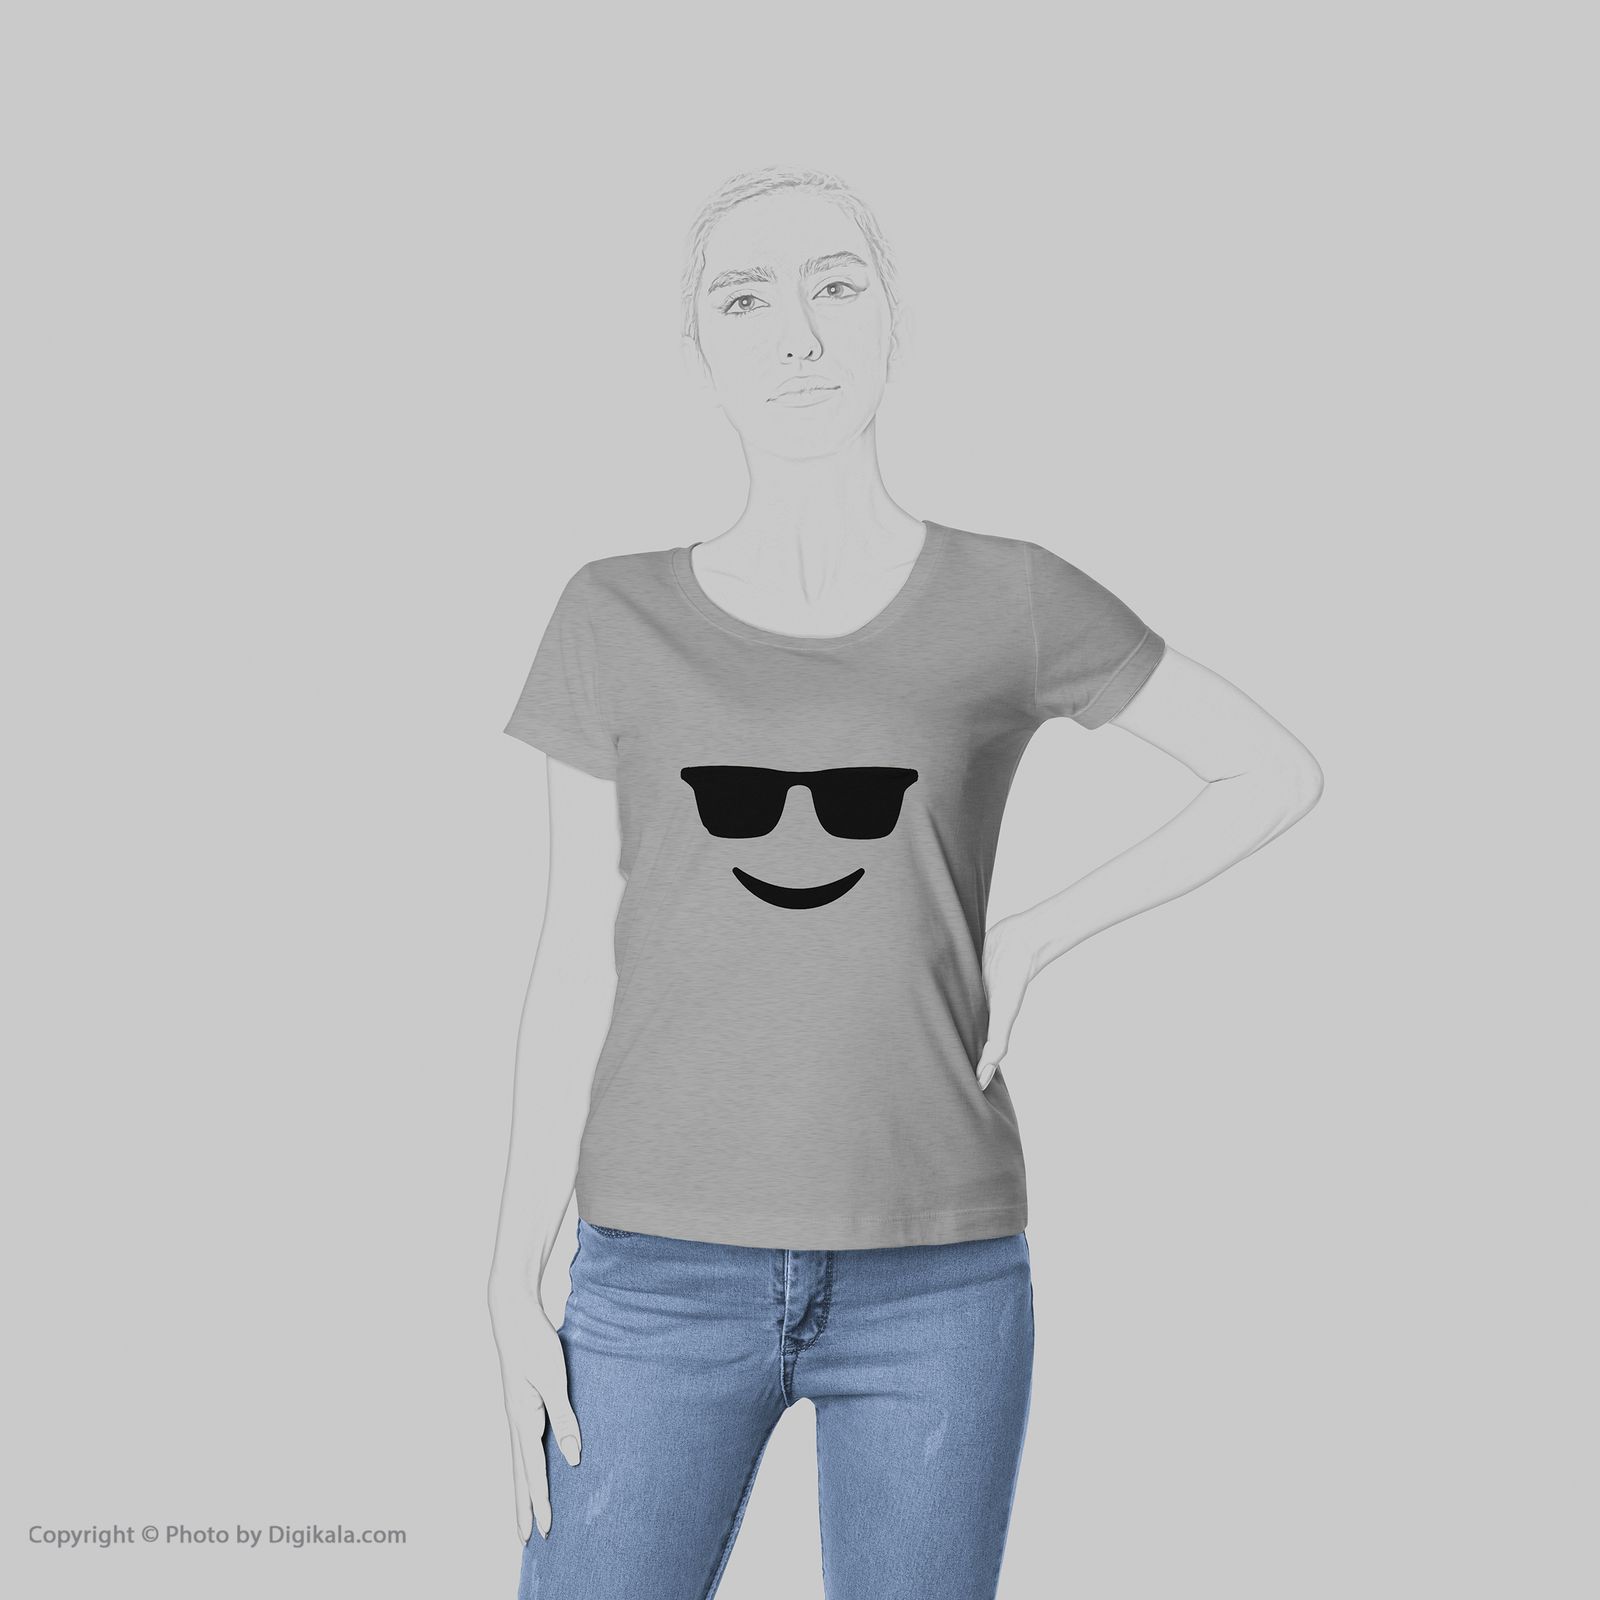 تی شرت زنانه به رسم طرح عینک کد 431 -  - 6